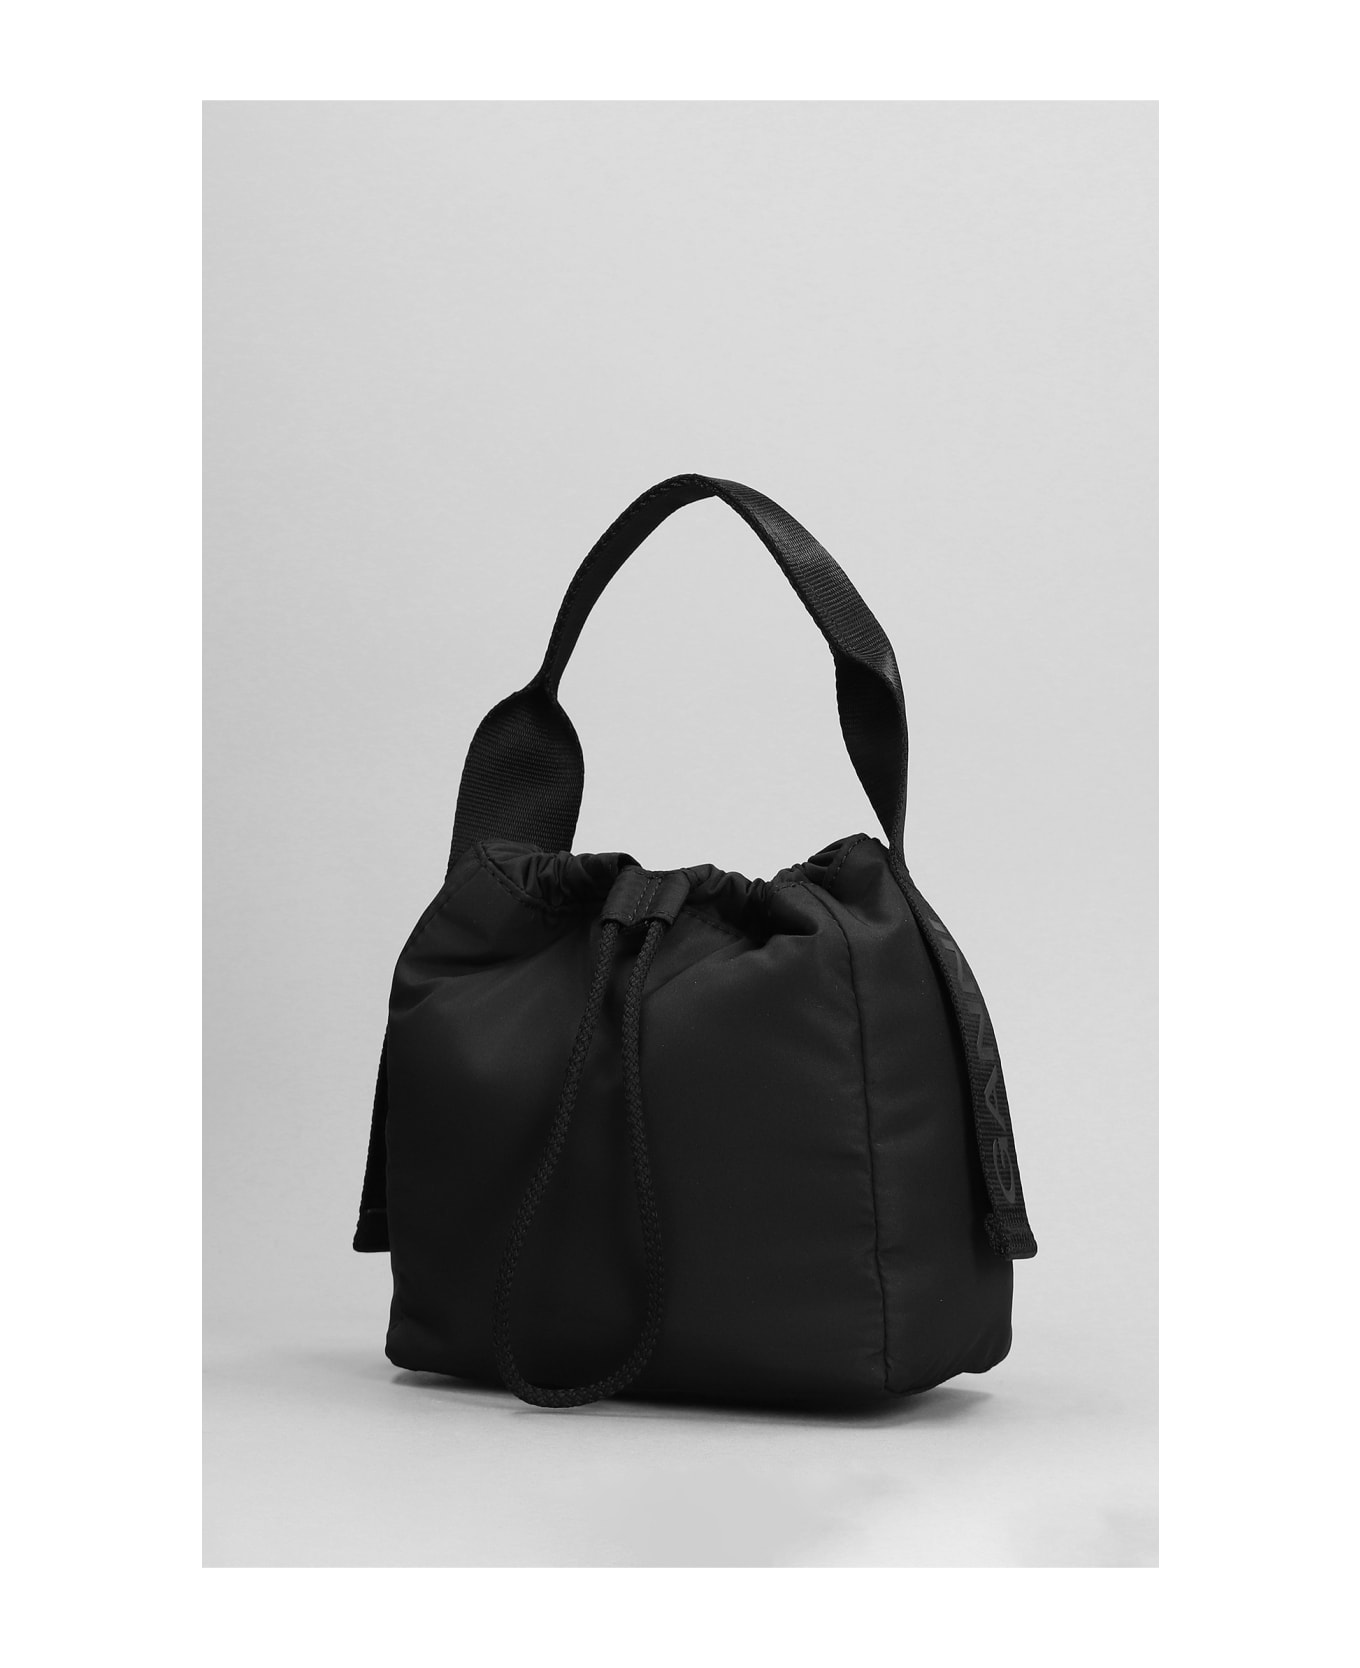 Ganni Hand Bag In Black Polyester - black